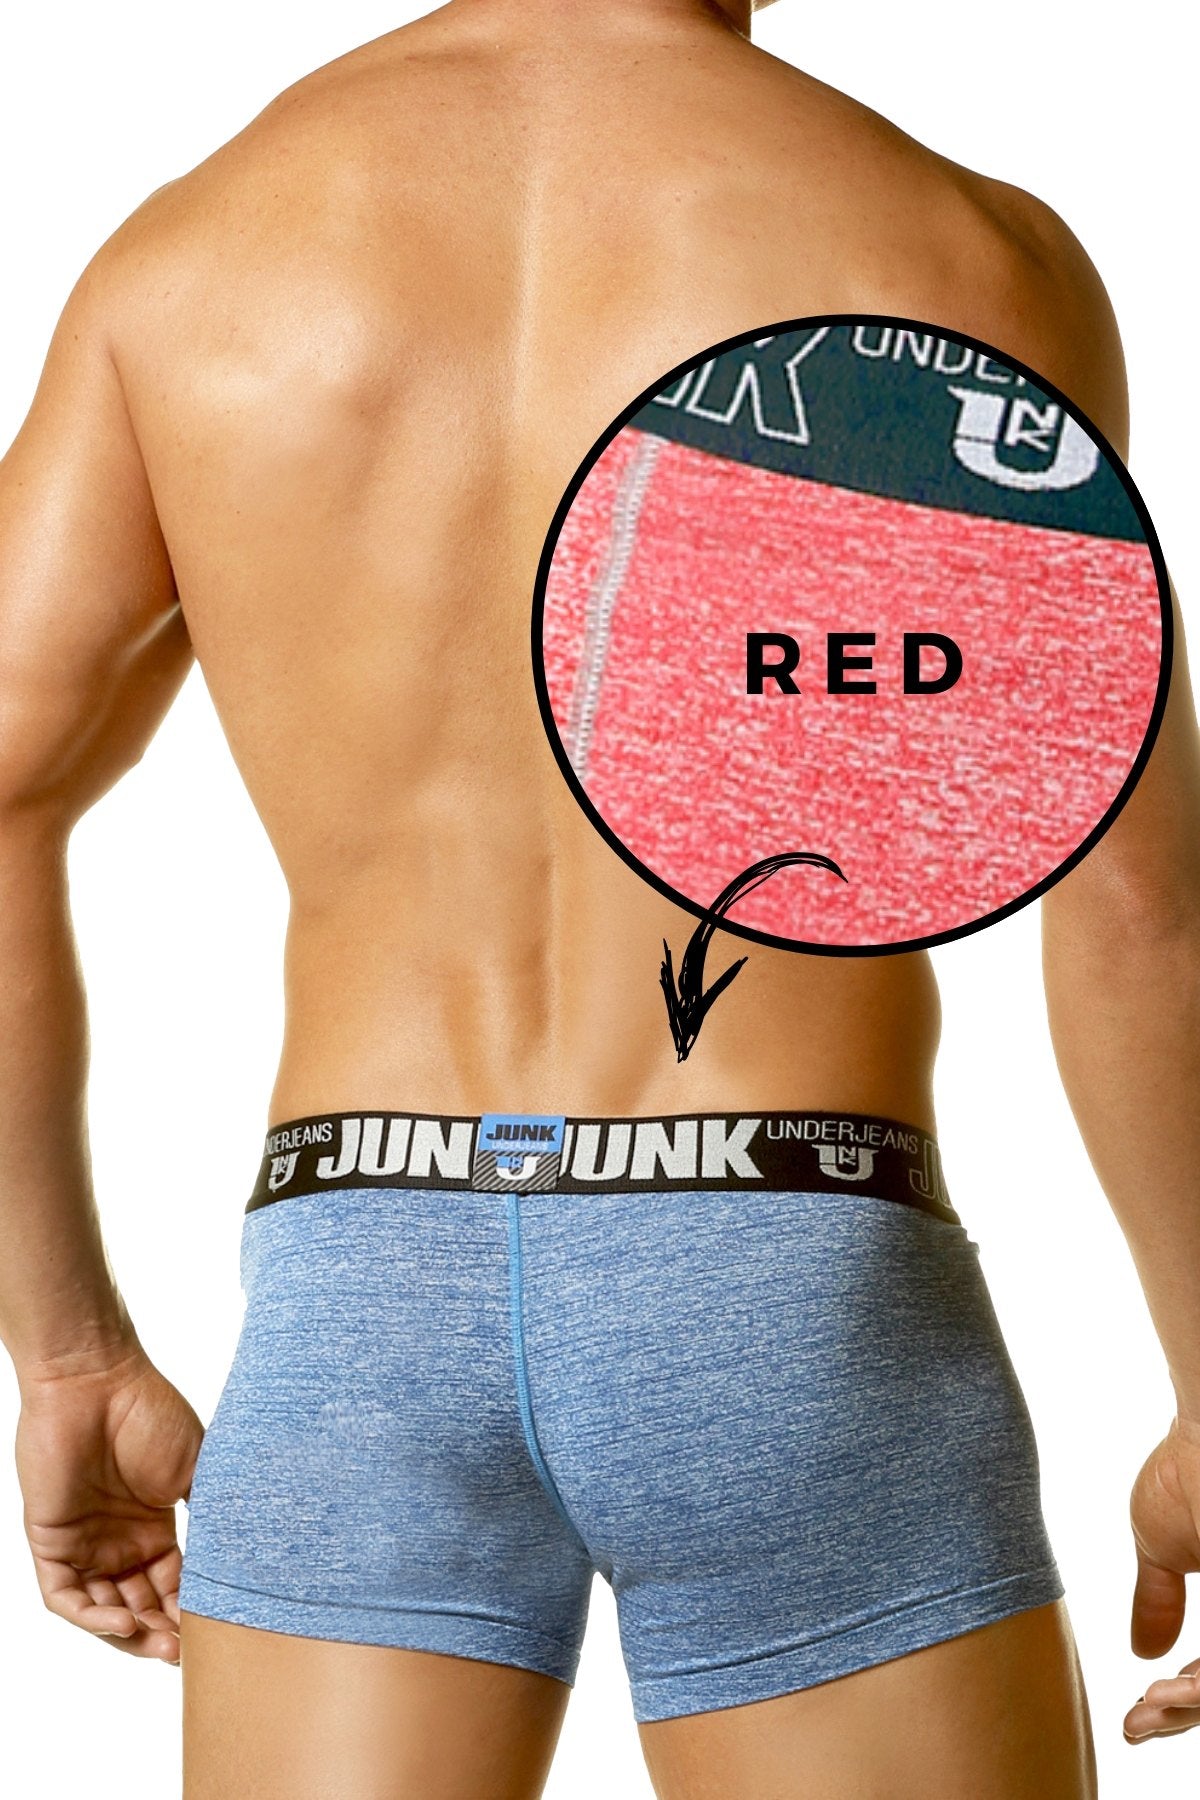 Junk Underjeans Red Sweat Trunk